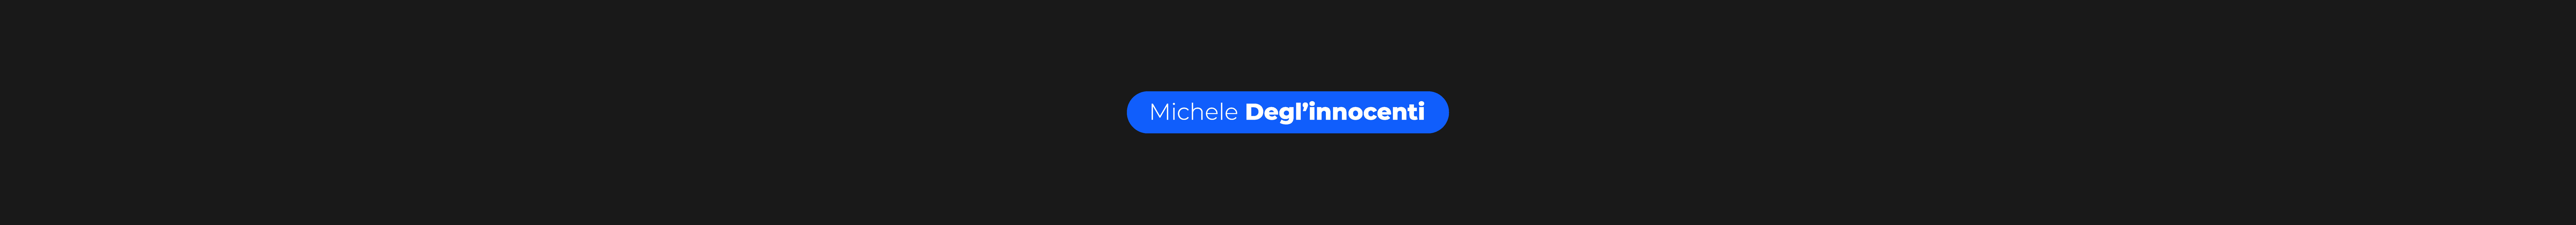 Michele Degl'innocenti's profile banner